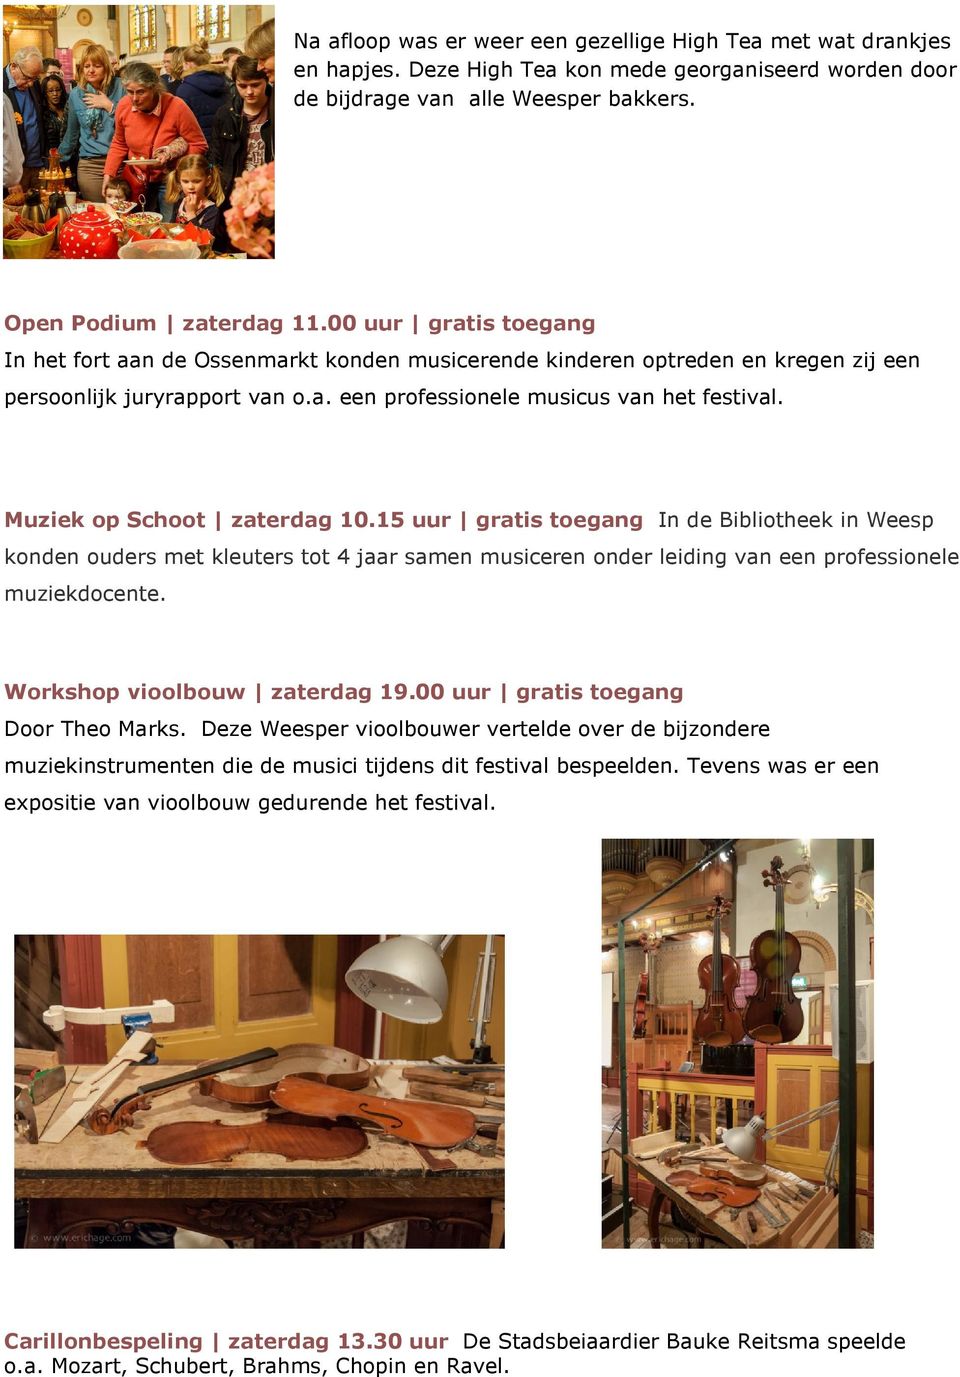 Muziek op Schoot zaterdag 10.15 uur gratis toegang In de Bibliotheek in Weesp konden ouders met kleuters tot 4 jaar samen musiceren onder leiding van een professionele muziekdocente.